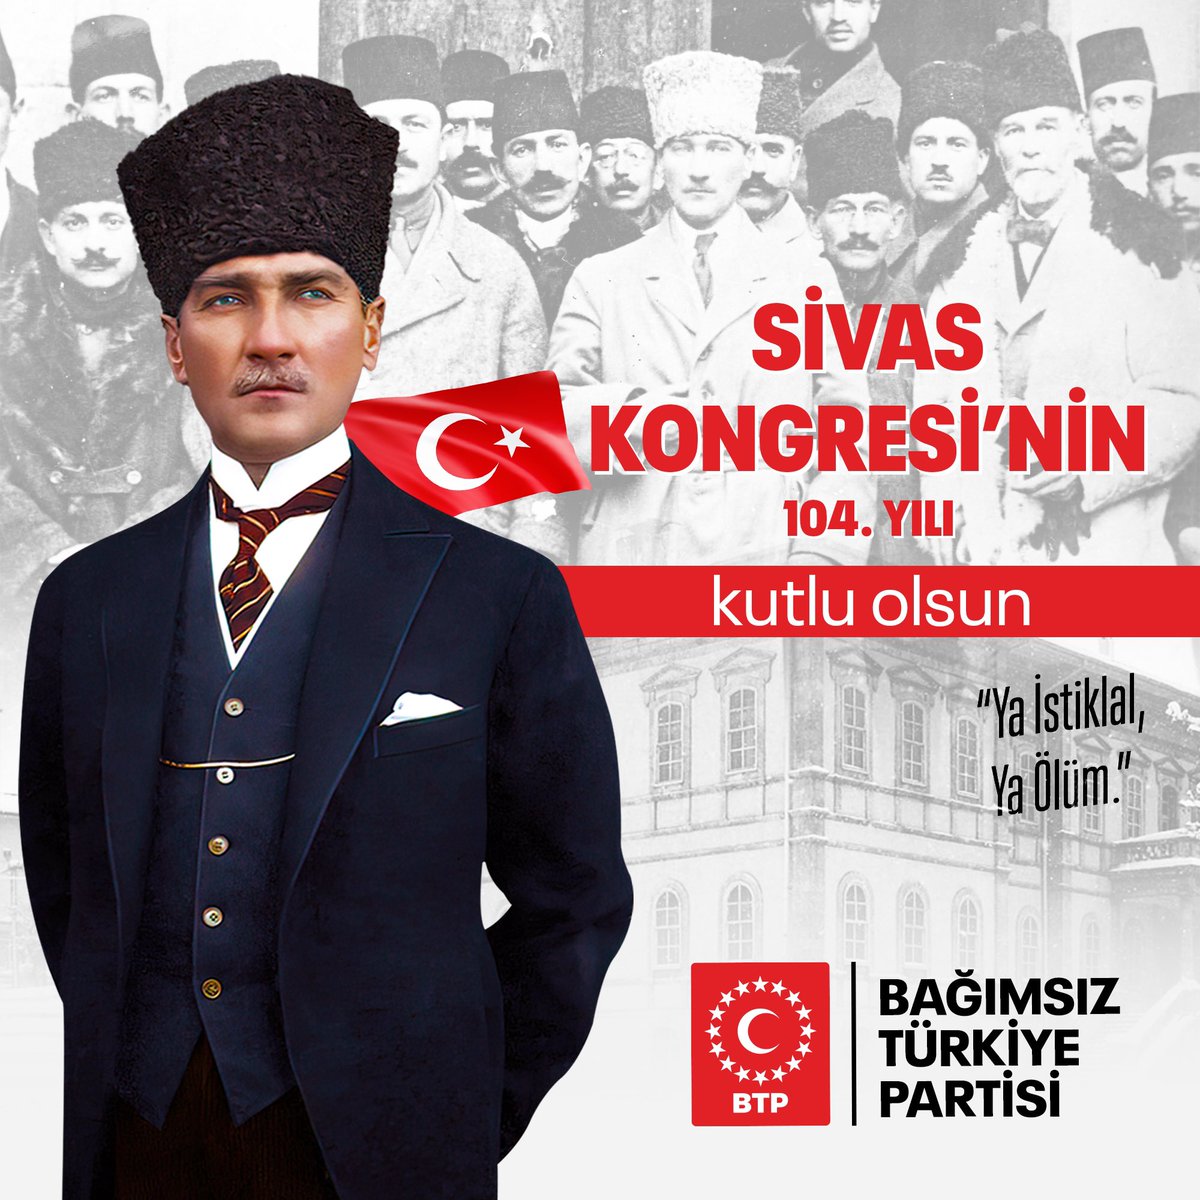 Parola: Ya İstiklal Ya Ölüm! Tarih: 4 Eylül 1919 Sivas Kongresi'nin 104. yılı kutlu olsun!🇹🇷 #SivasKongresi